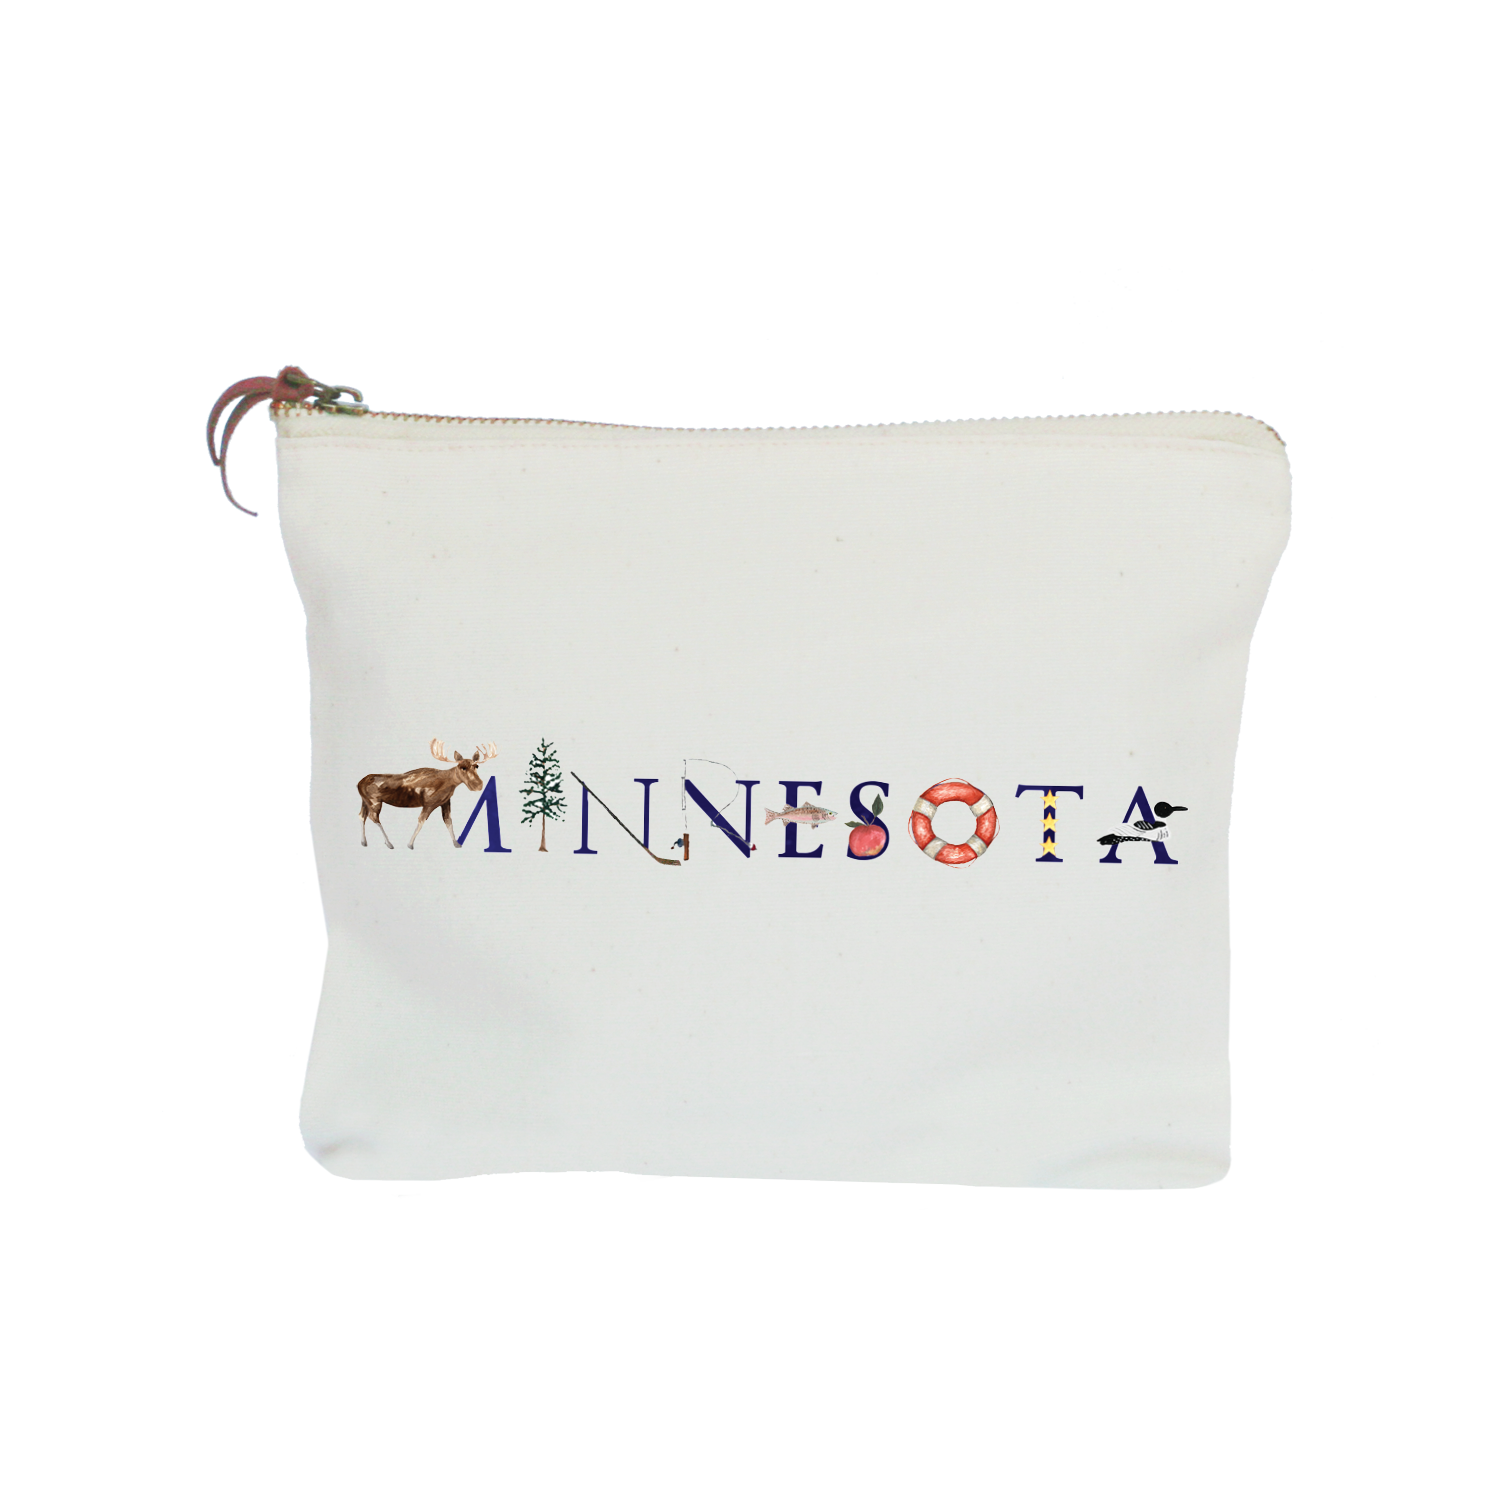 Minnesota zipper pouch